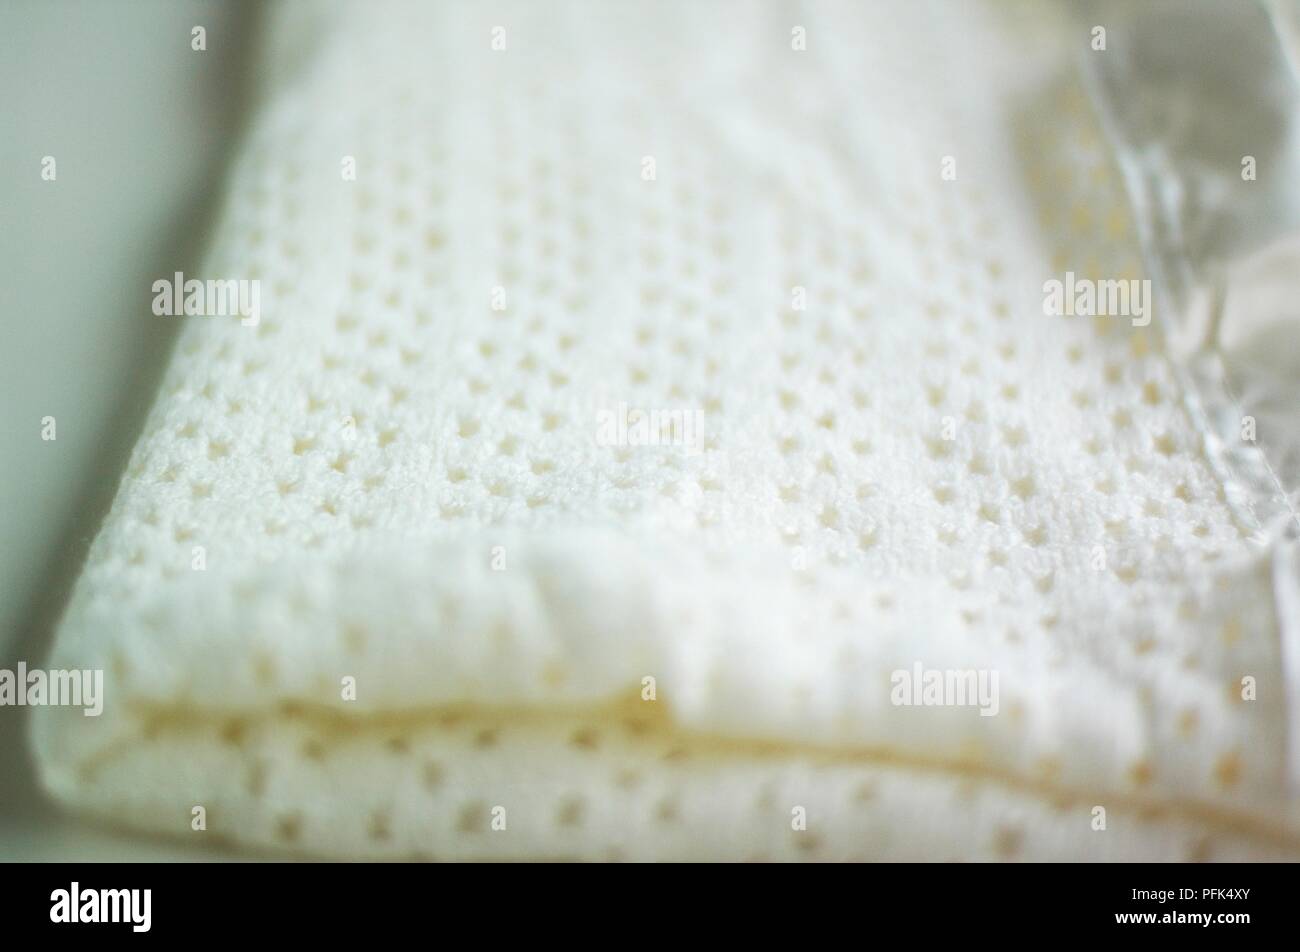 White cellular blanket, folded up, close-up Stock Photo